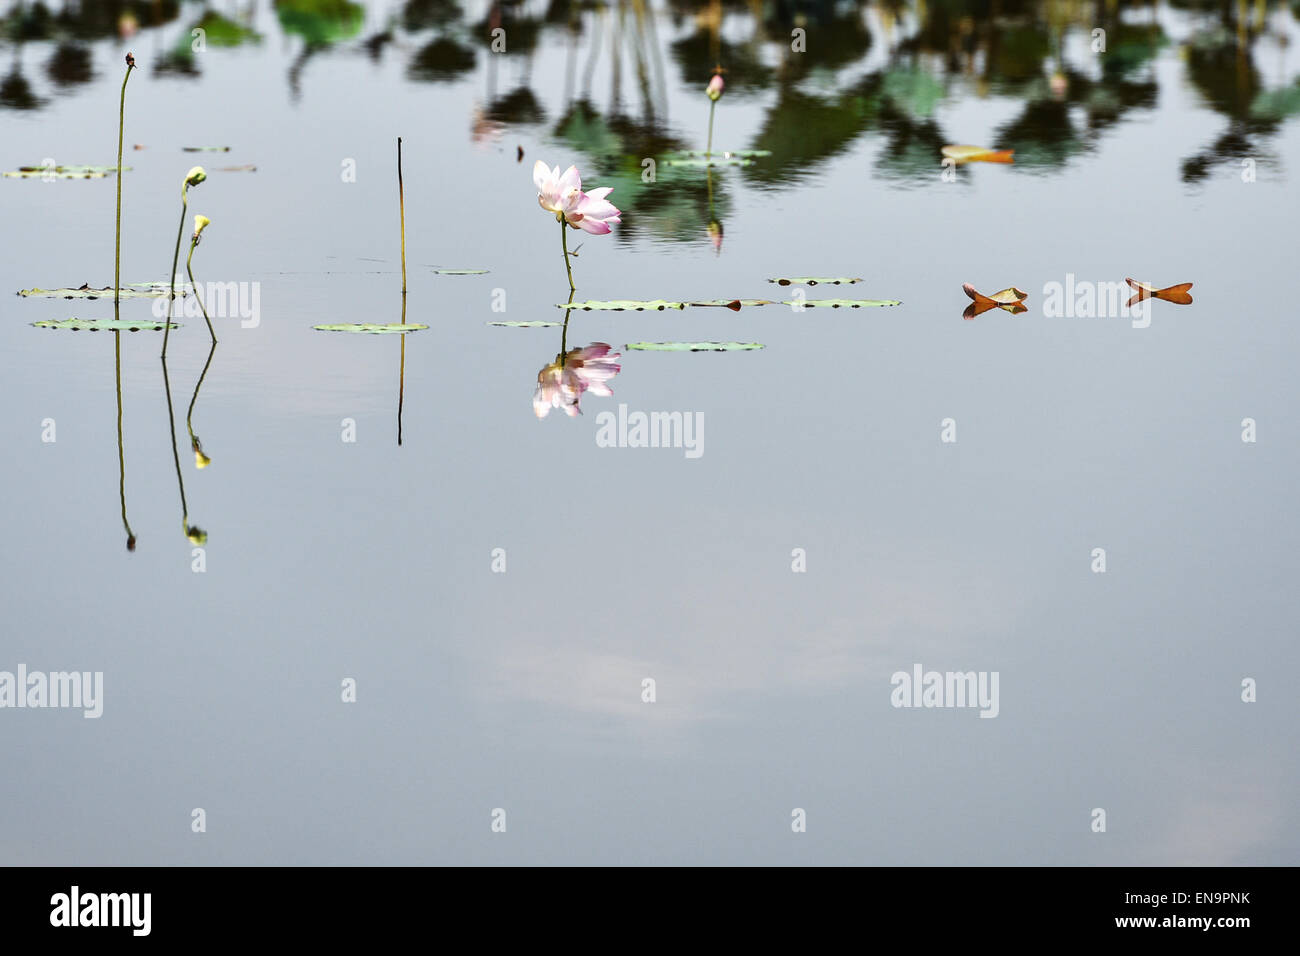 La province de Nakhon Sawan, Thaïlande. Apr 30, 2015. Un lotus en fleurs est visible dans l'eau douce, un Bueng Boraphet marécage et lac dans la province de Nakhon Sawan, centre de la Thaïlande, 30 avril 2015. Couvrant une superficie de 212,38 kilomètres carrés, Bueng Boraphet abrite près de 200 espèces animales et végétales. Le lac est une destination pour les oiseaux migrateurs entre septembre et mars. © Li Mangmang/Xinhua/Alamy Live News Banque D'Images